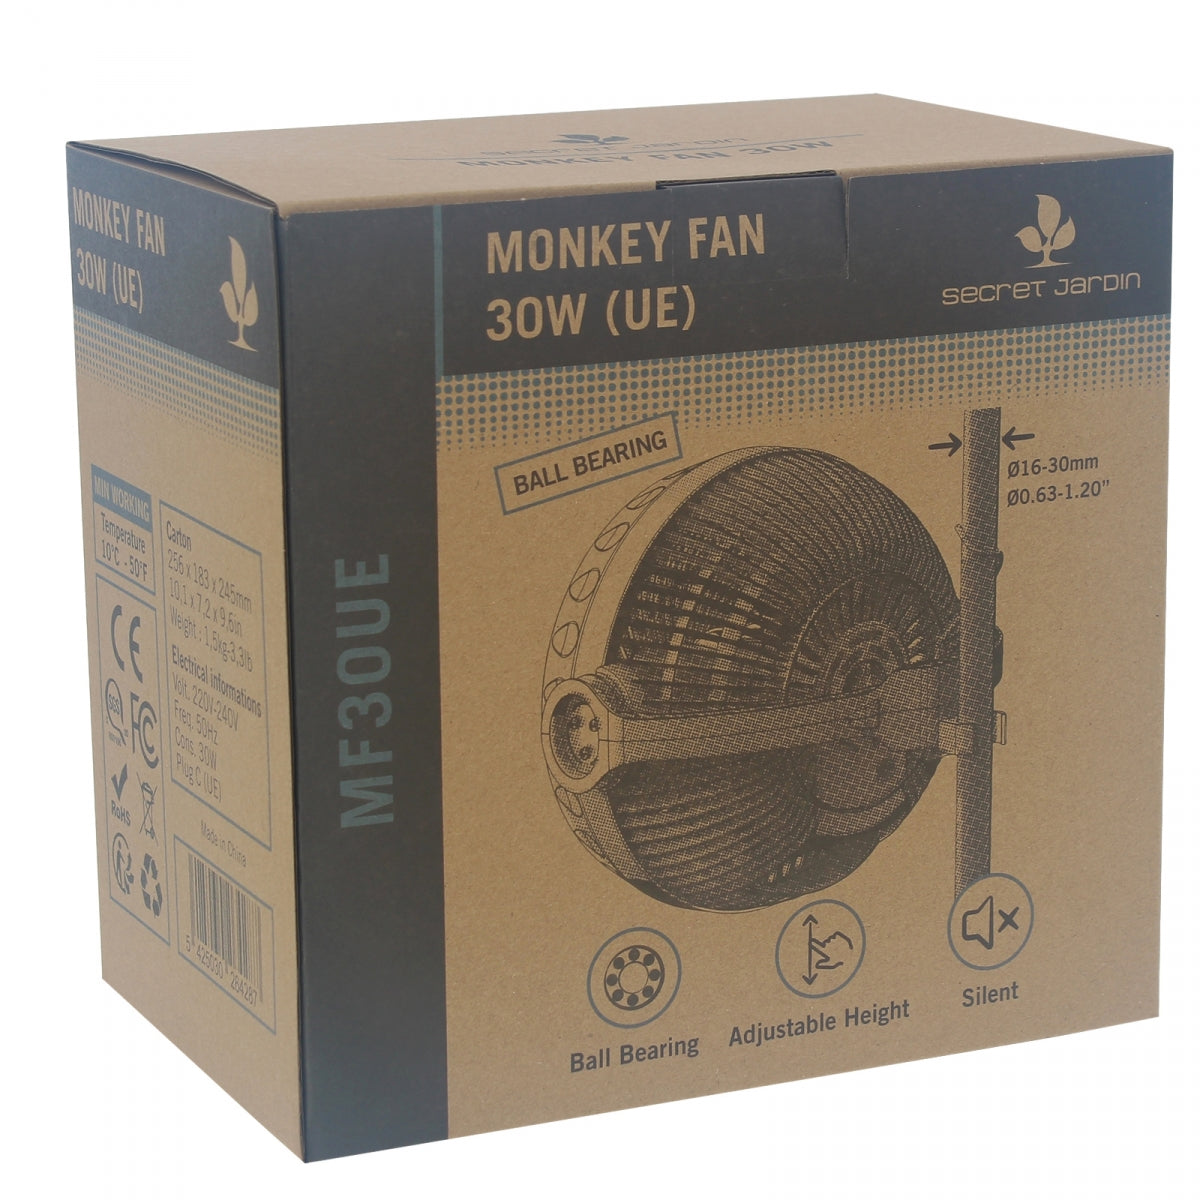 Secret Jardin Monkey Fan 30W - Ball Bearing